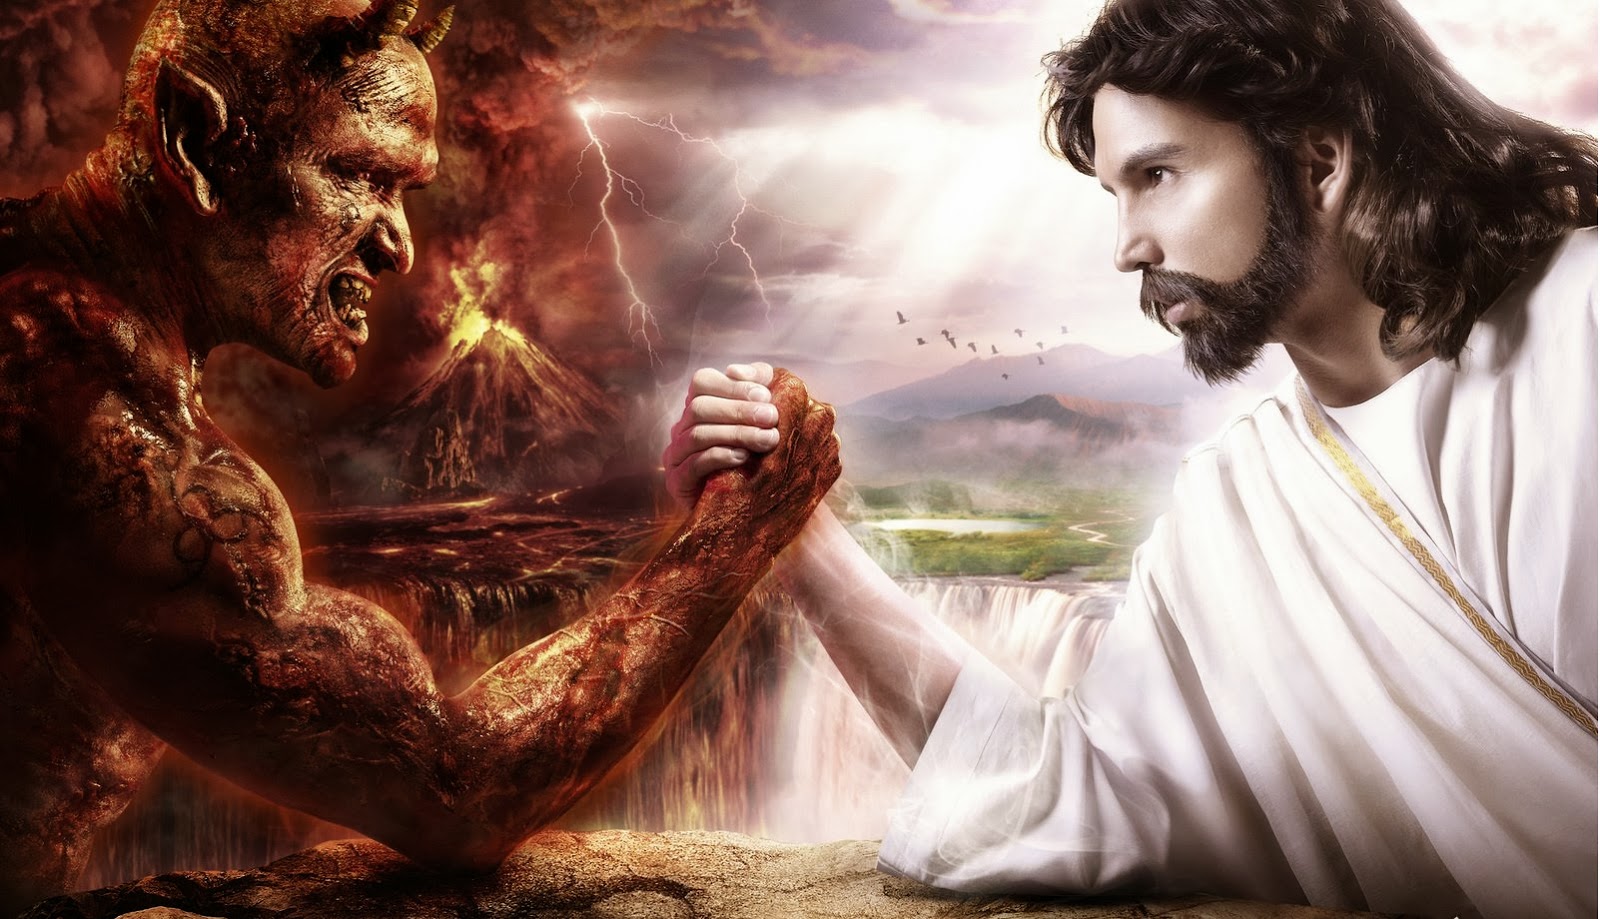 Люди стали богами. Бог против сатаны. Бог и дьявол. Иисус против дьявола. Борьба добра и зла.